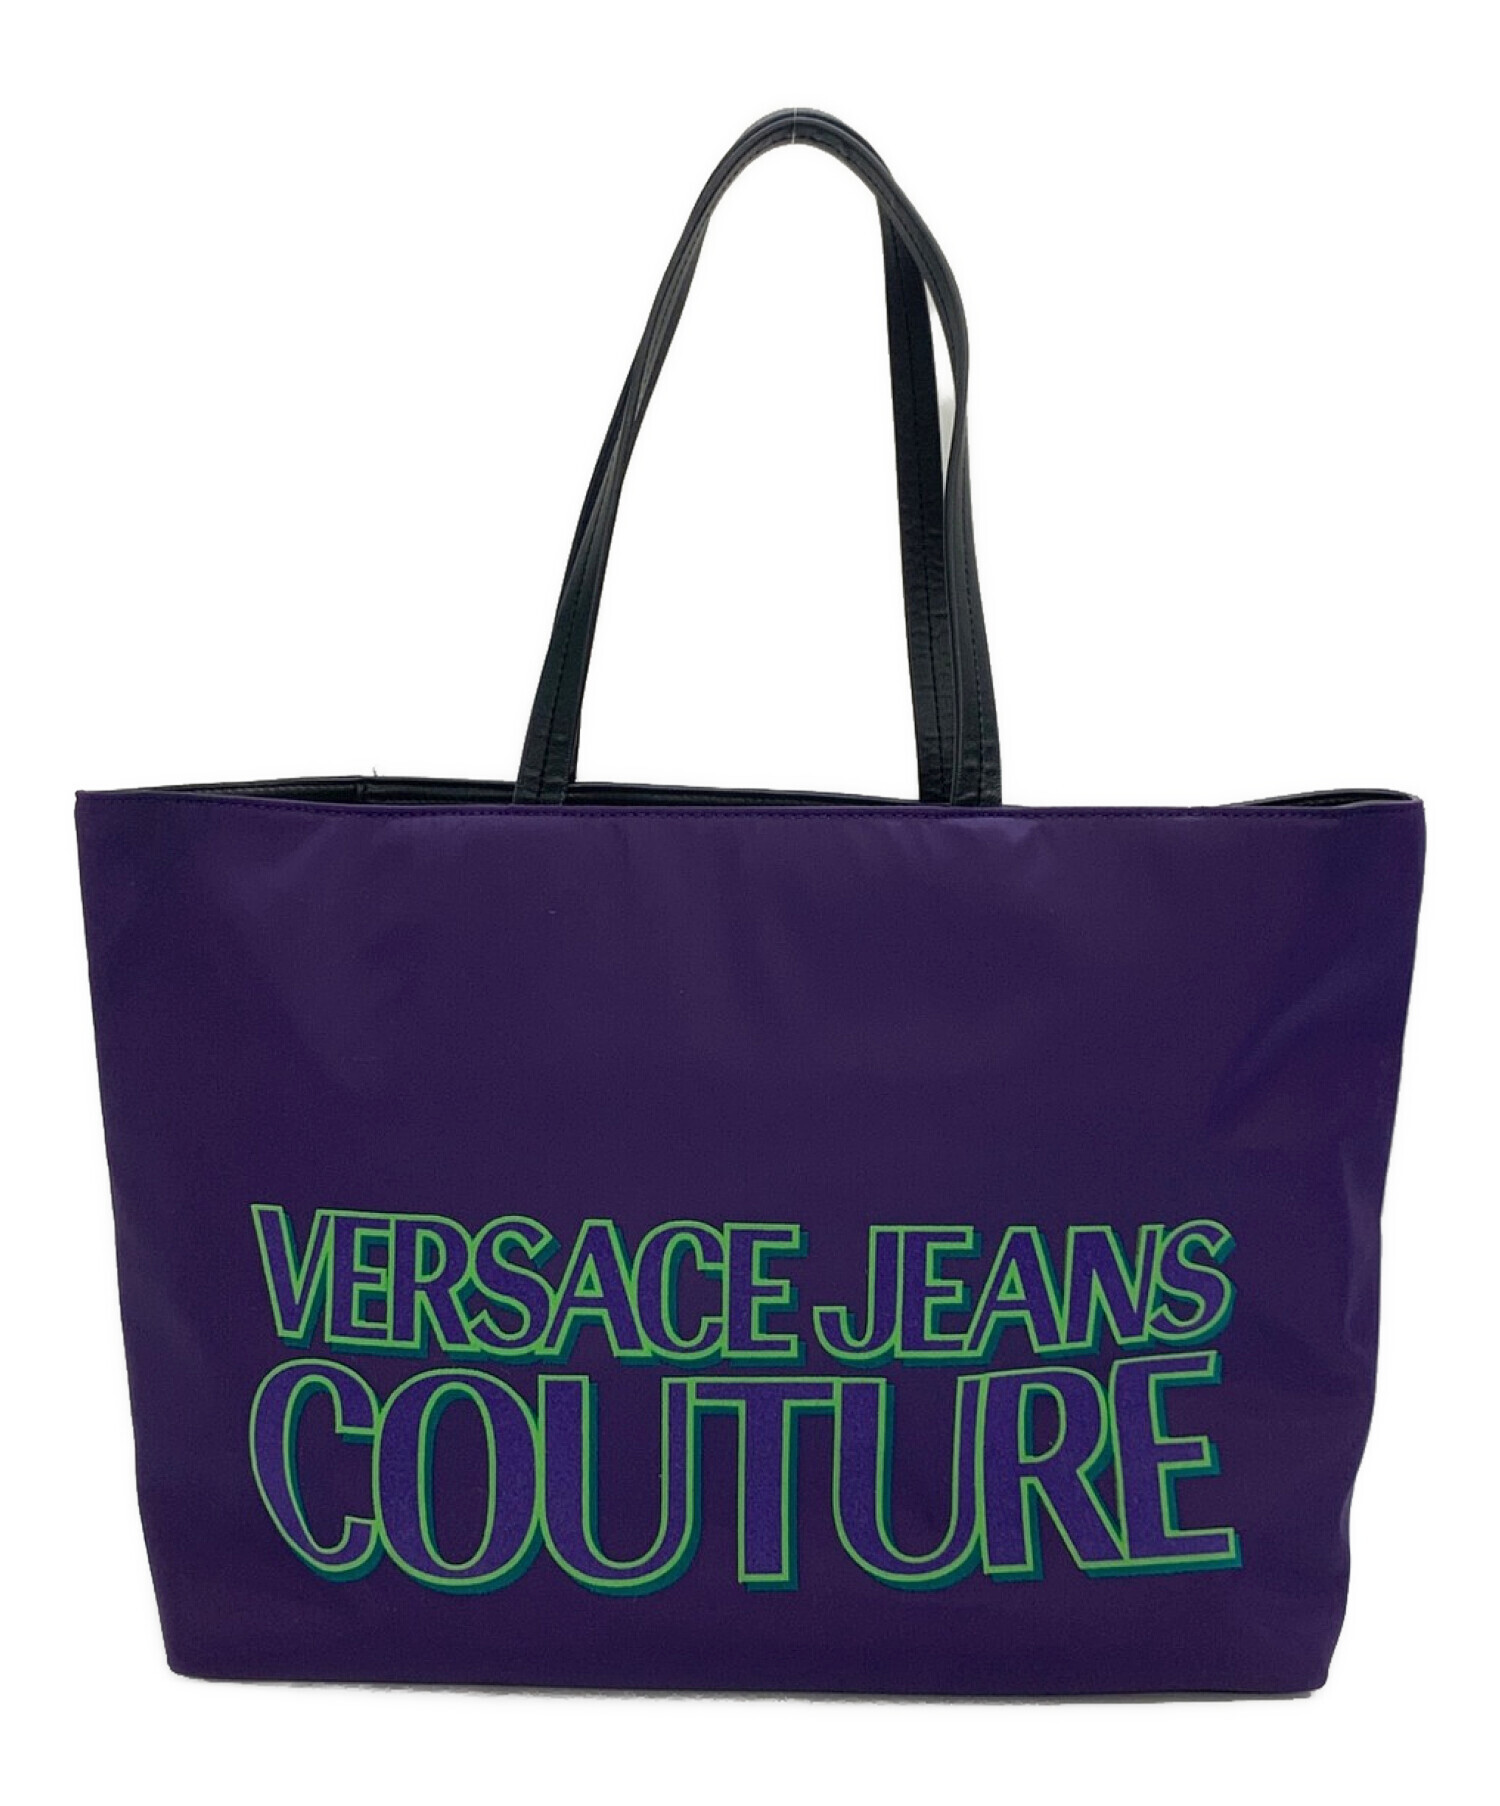 ハンドル15cmVersace Jeans Couture Tote Bag ヴェルサーチバッグ